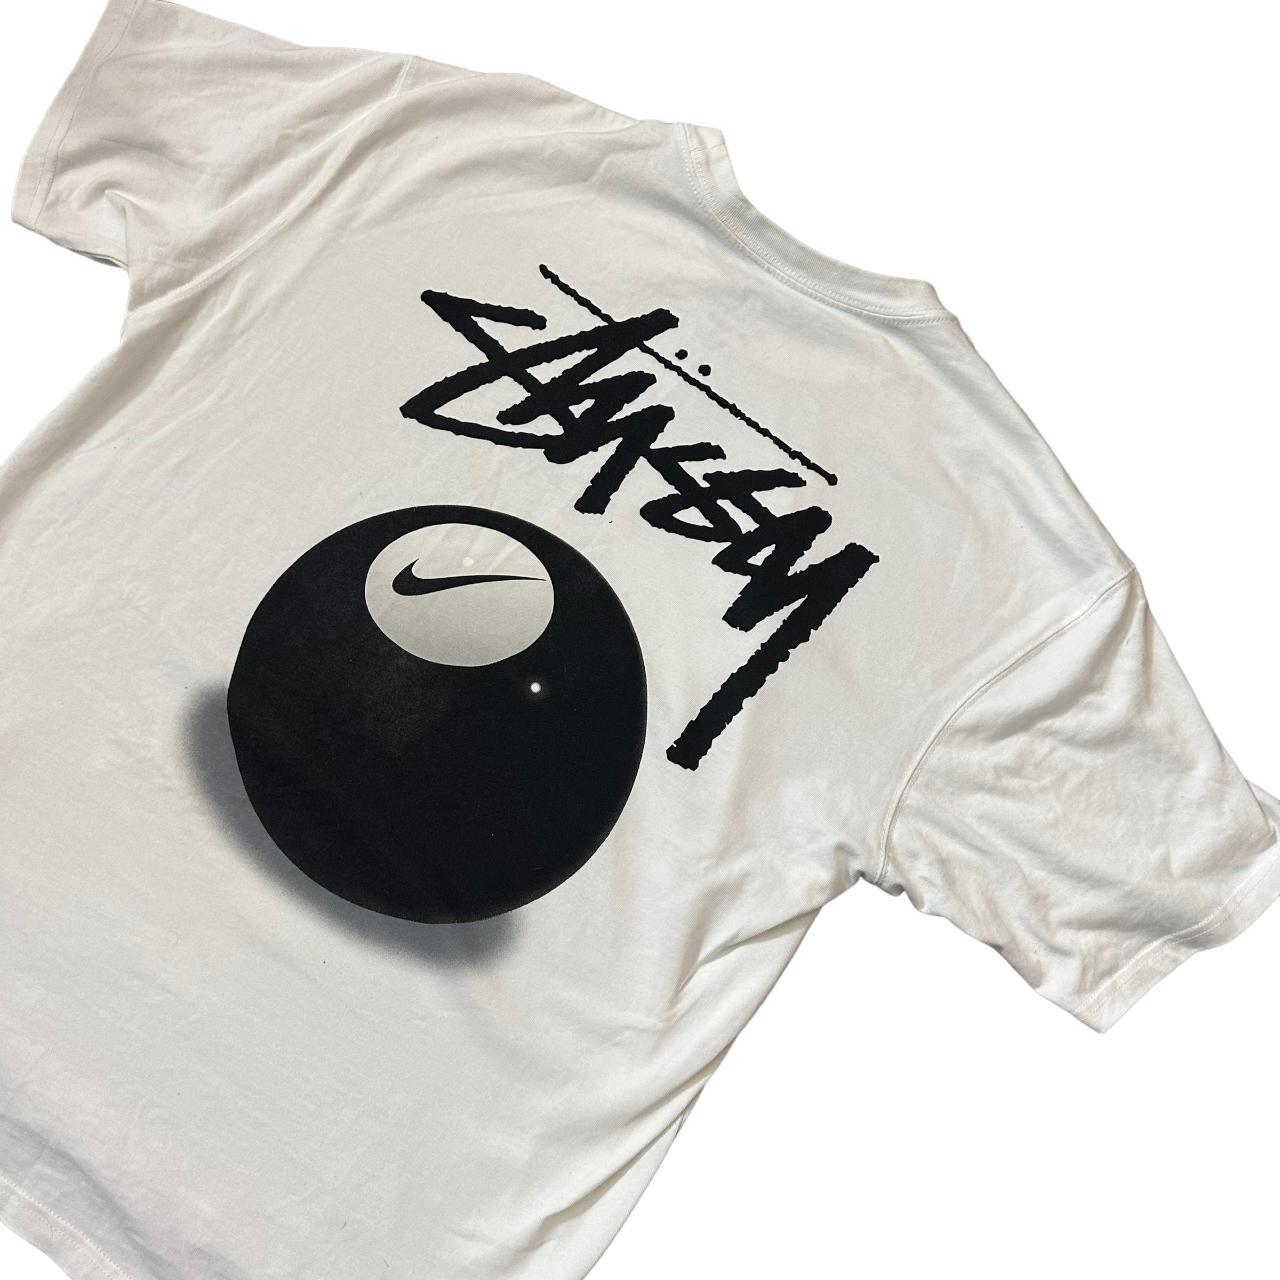 Stussy Nike logo T-shirt